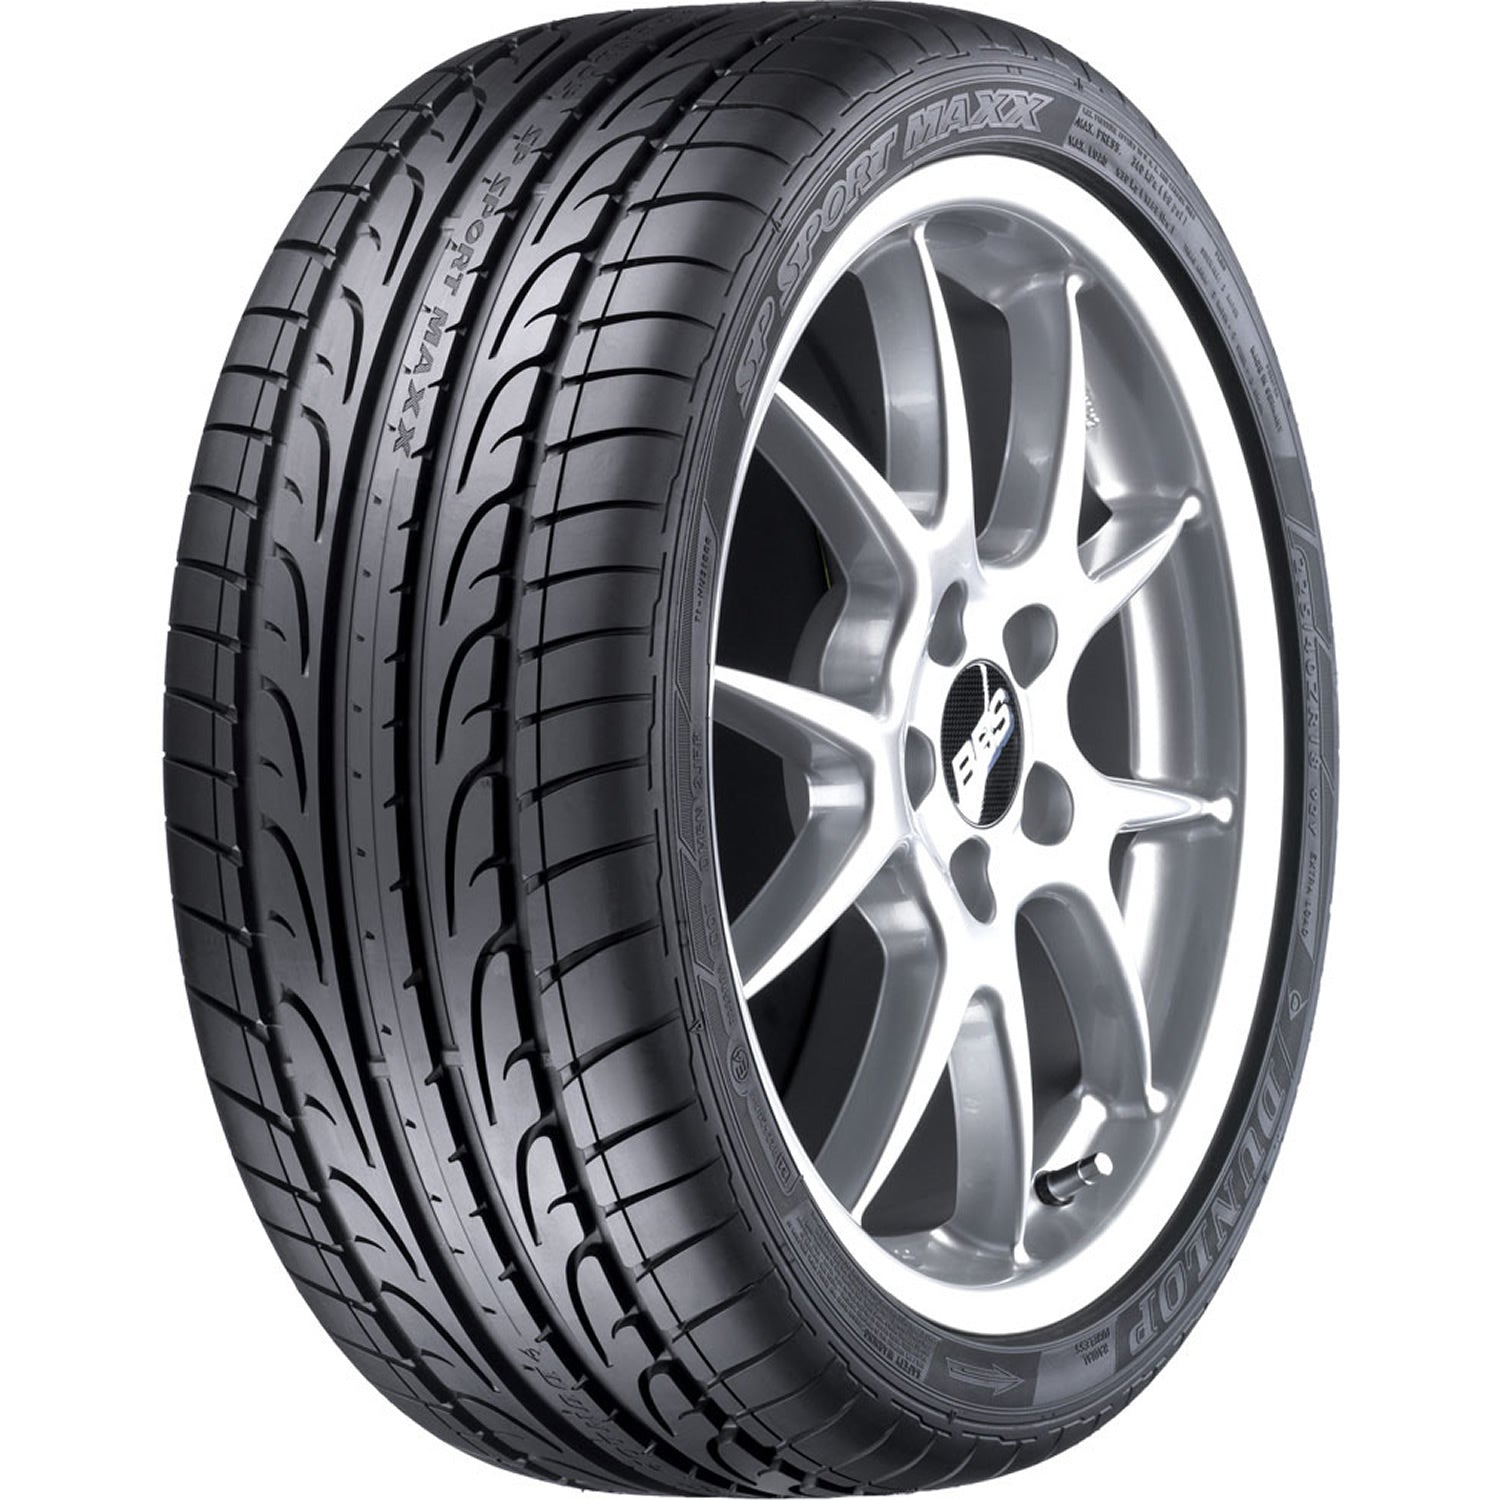 DUNLOP SP SPORT MAXX 255/35ZR20 (27X10.2R 20) Tires